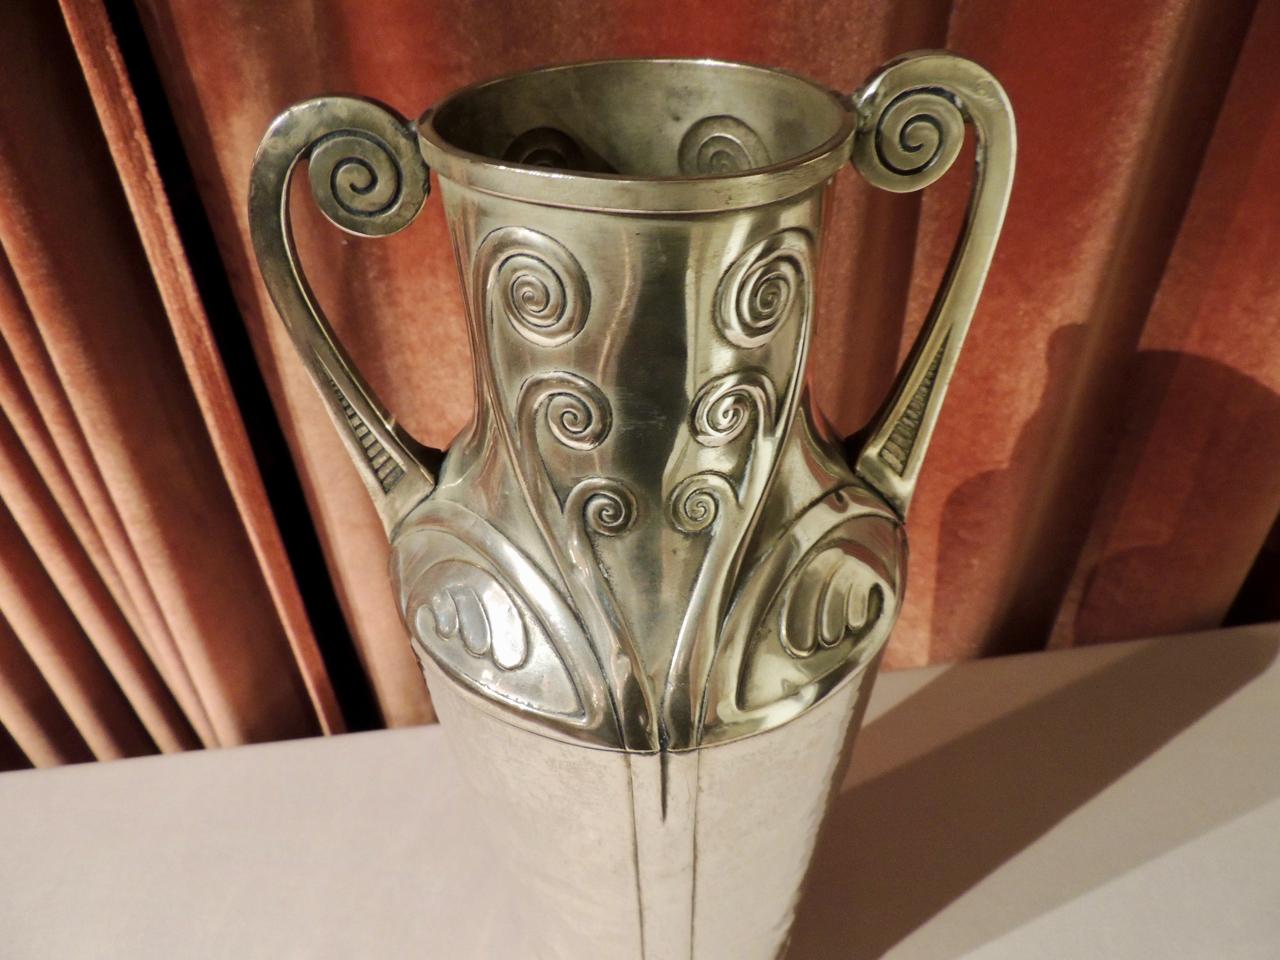 Diese hohe Silbervase im Jugendstil mit handgehämmerten Details wurde Anfang 1900 in Deutschland hergestellt. Entworfen von Carl Deffner aus Esslingen, der 1856 geboren wurde und im Jahr 1900 die Leitung der väterlichen Metallwarenfabrik übernahm.